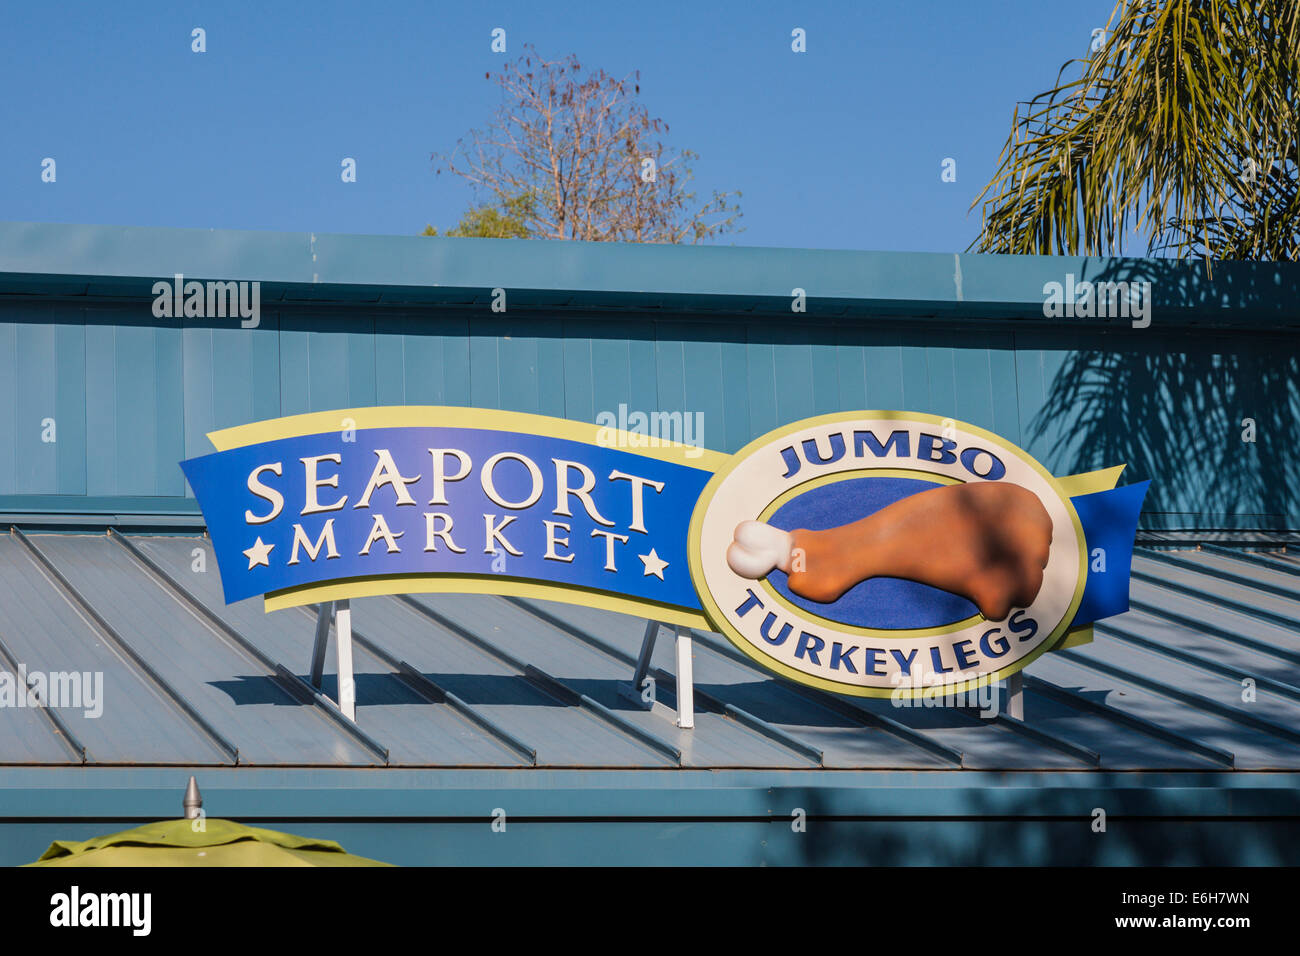 Inscrivez-vous pour la vente de concession marché Seaport Turquie Jumbo Jambes dans Sea World, Orlando, Floride Banque D'Images